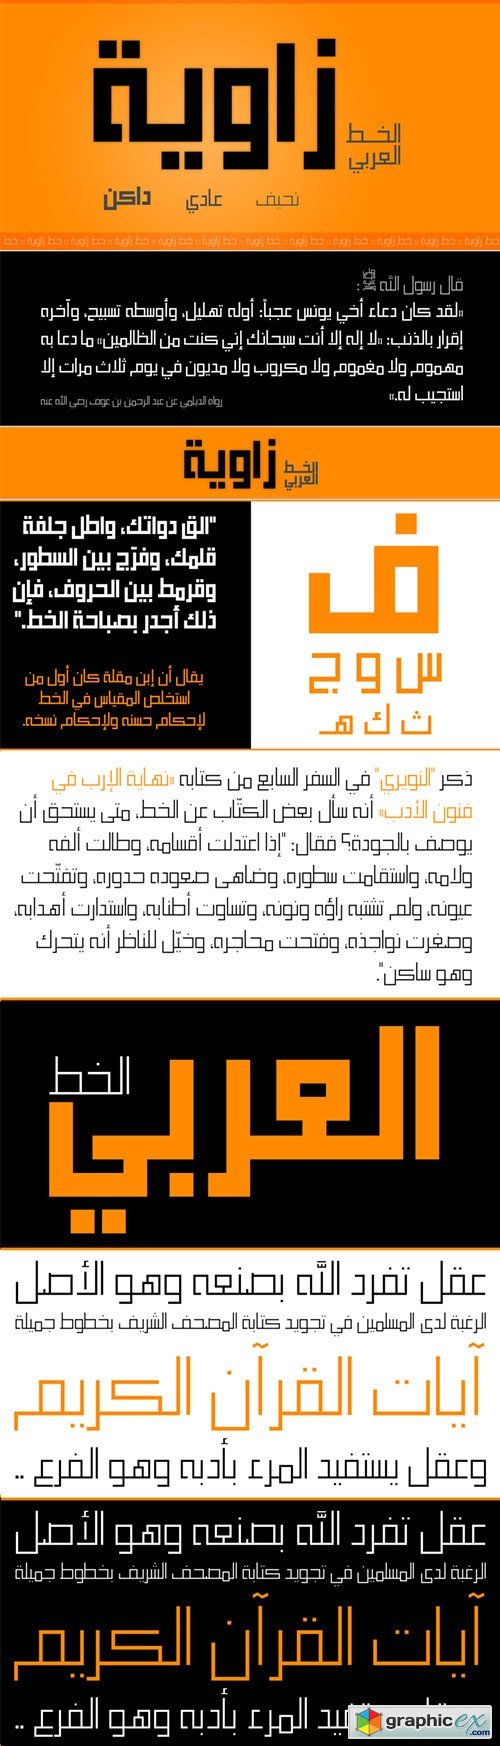 Zawiya - Kufic Modern Square-Shaped Arabic Typeface 3xOTF